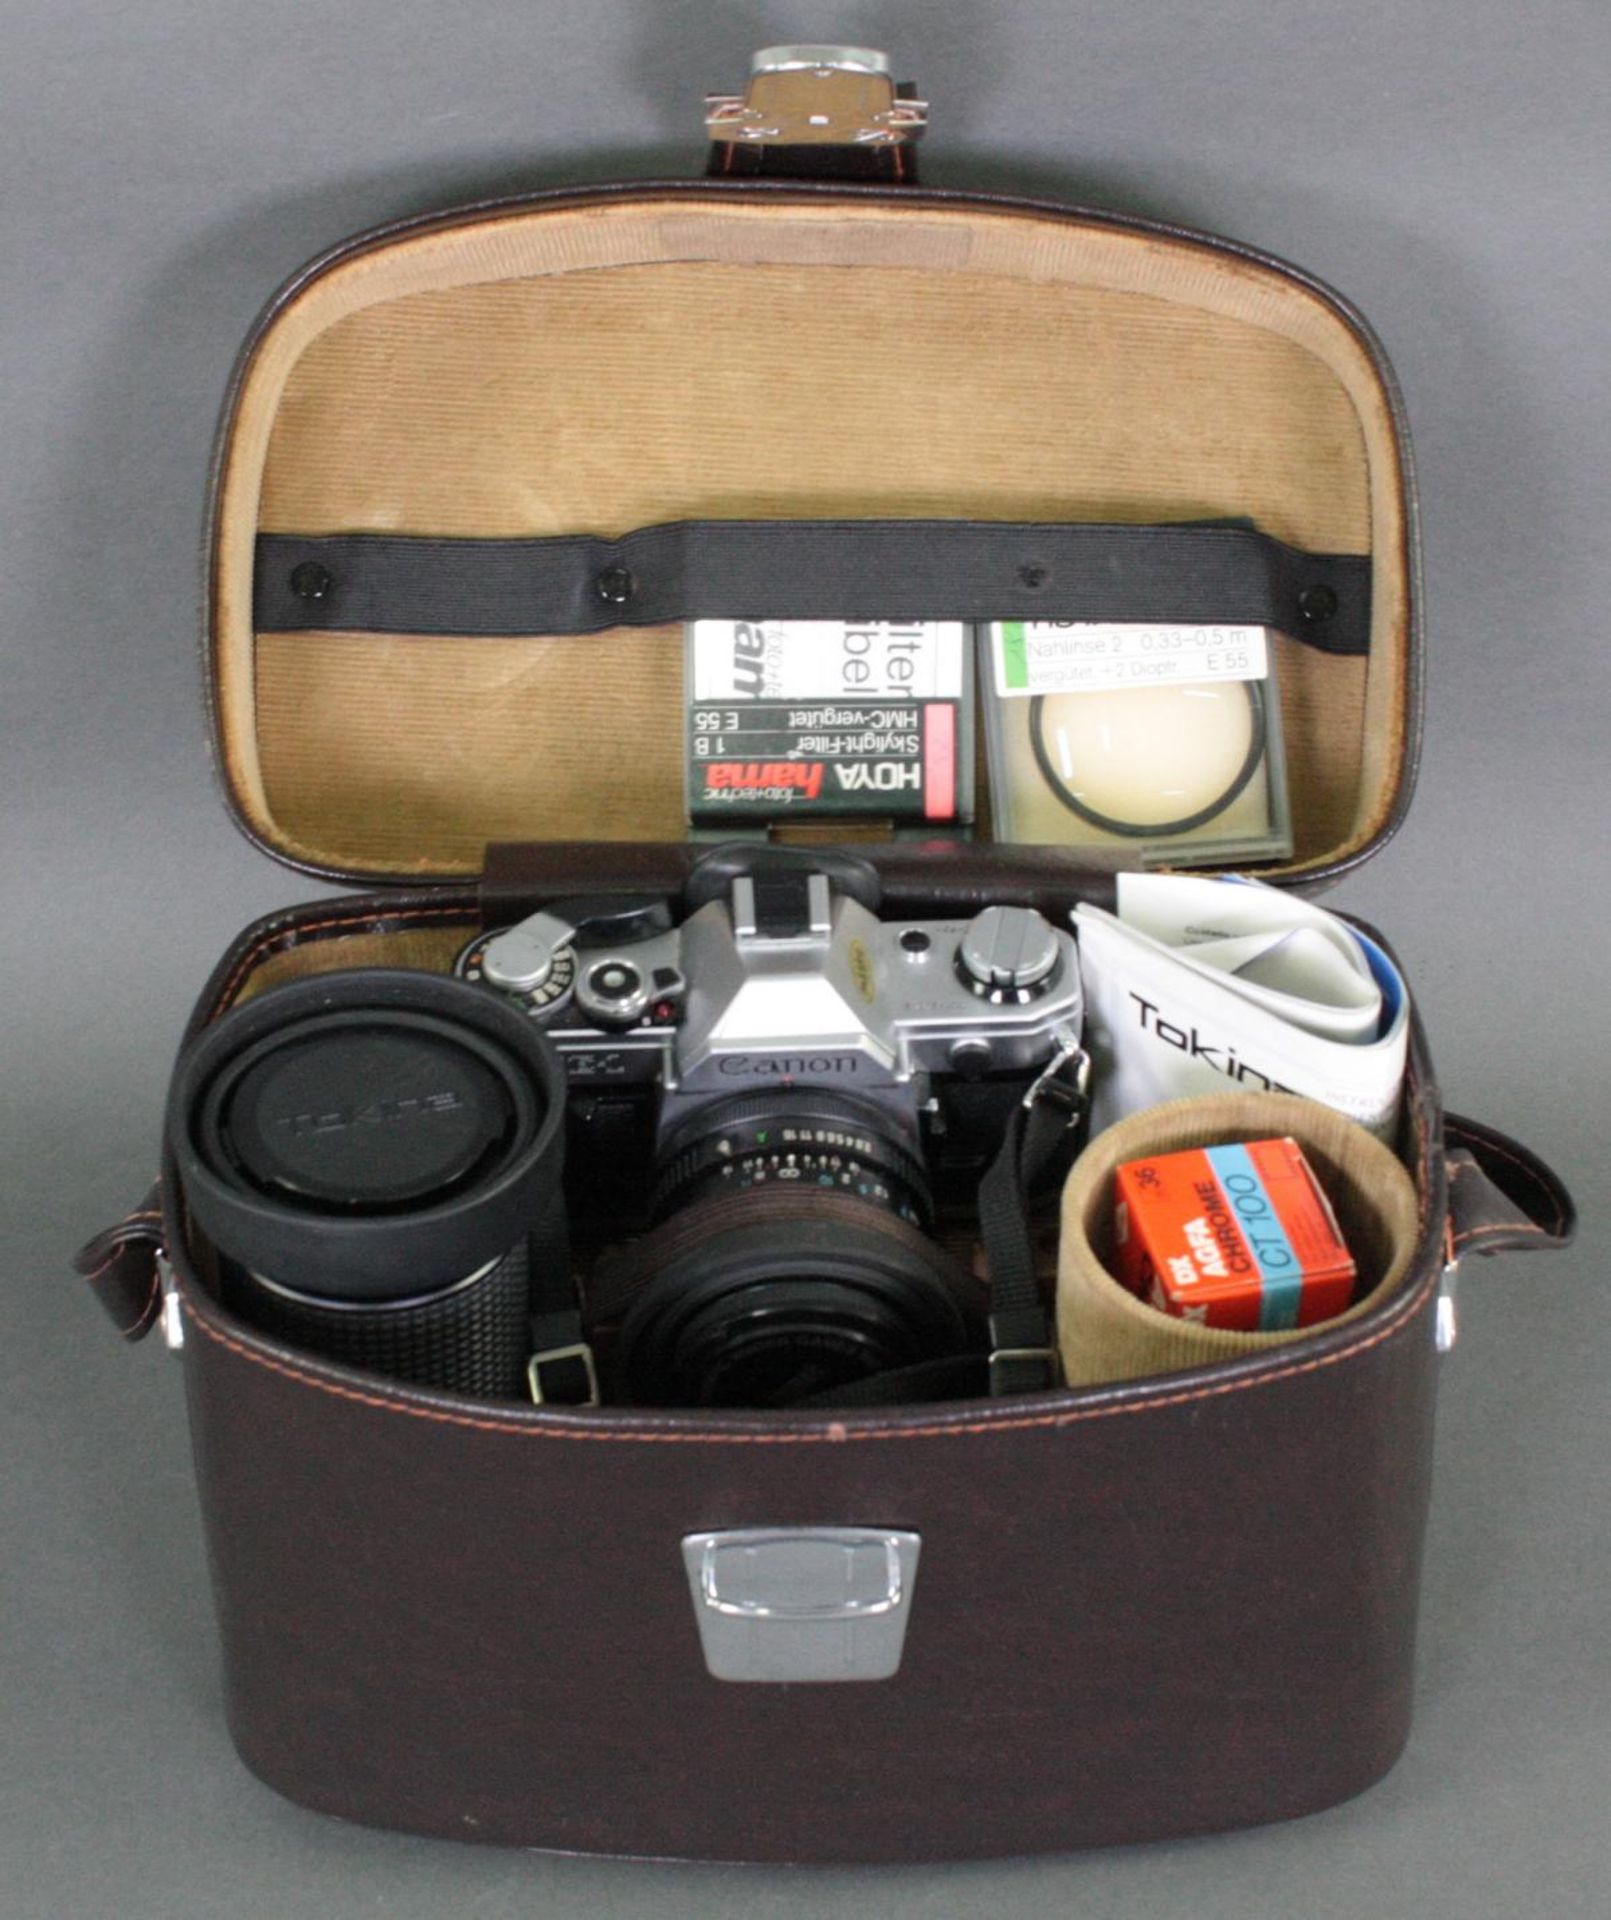 Canon AE-1 Kamera mit Tokina 28 mm Objektiv, Kameratasche und Zubehör - Bild 2 aus 2